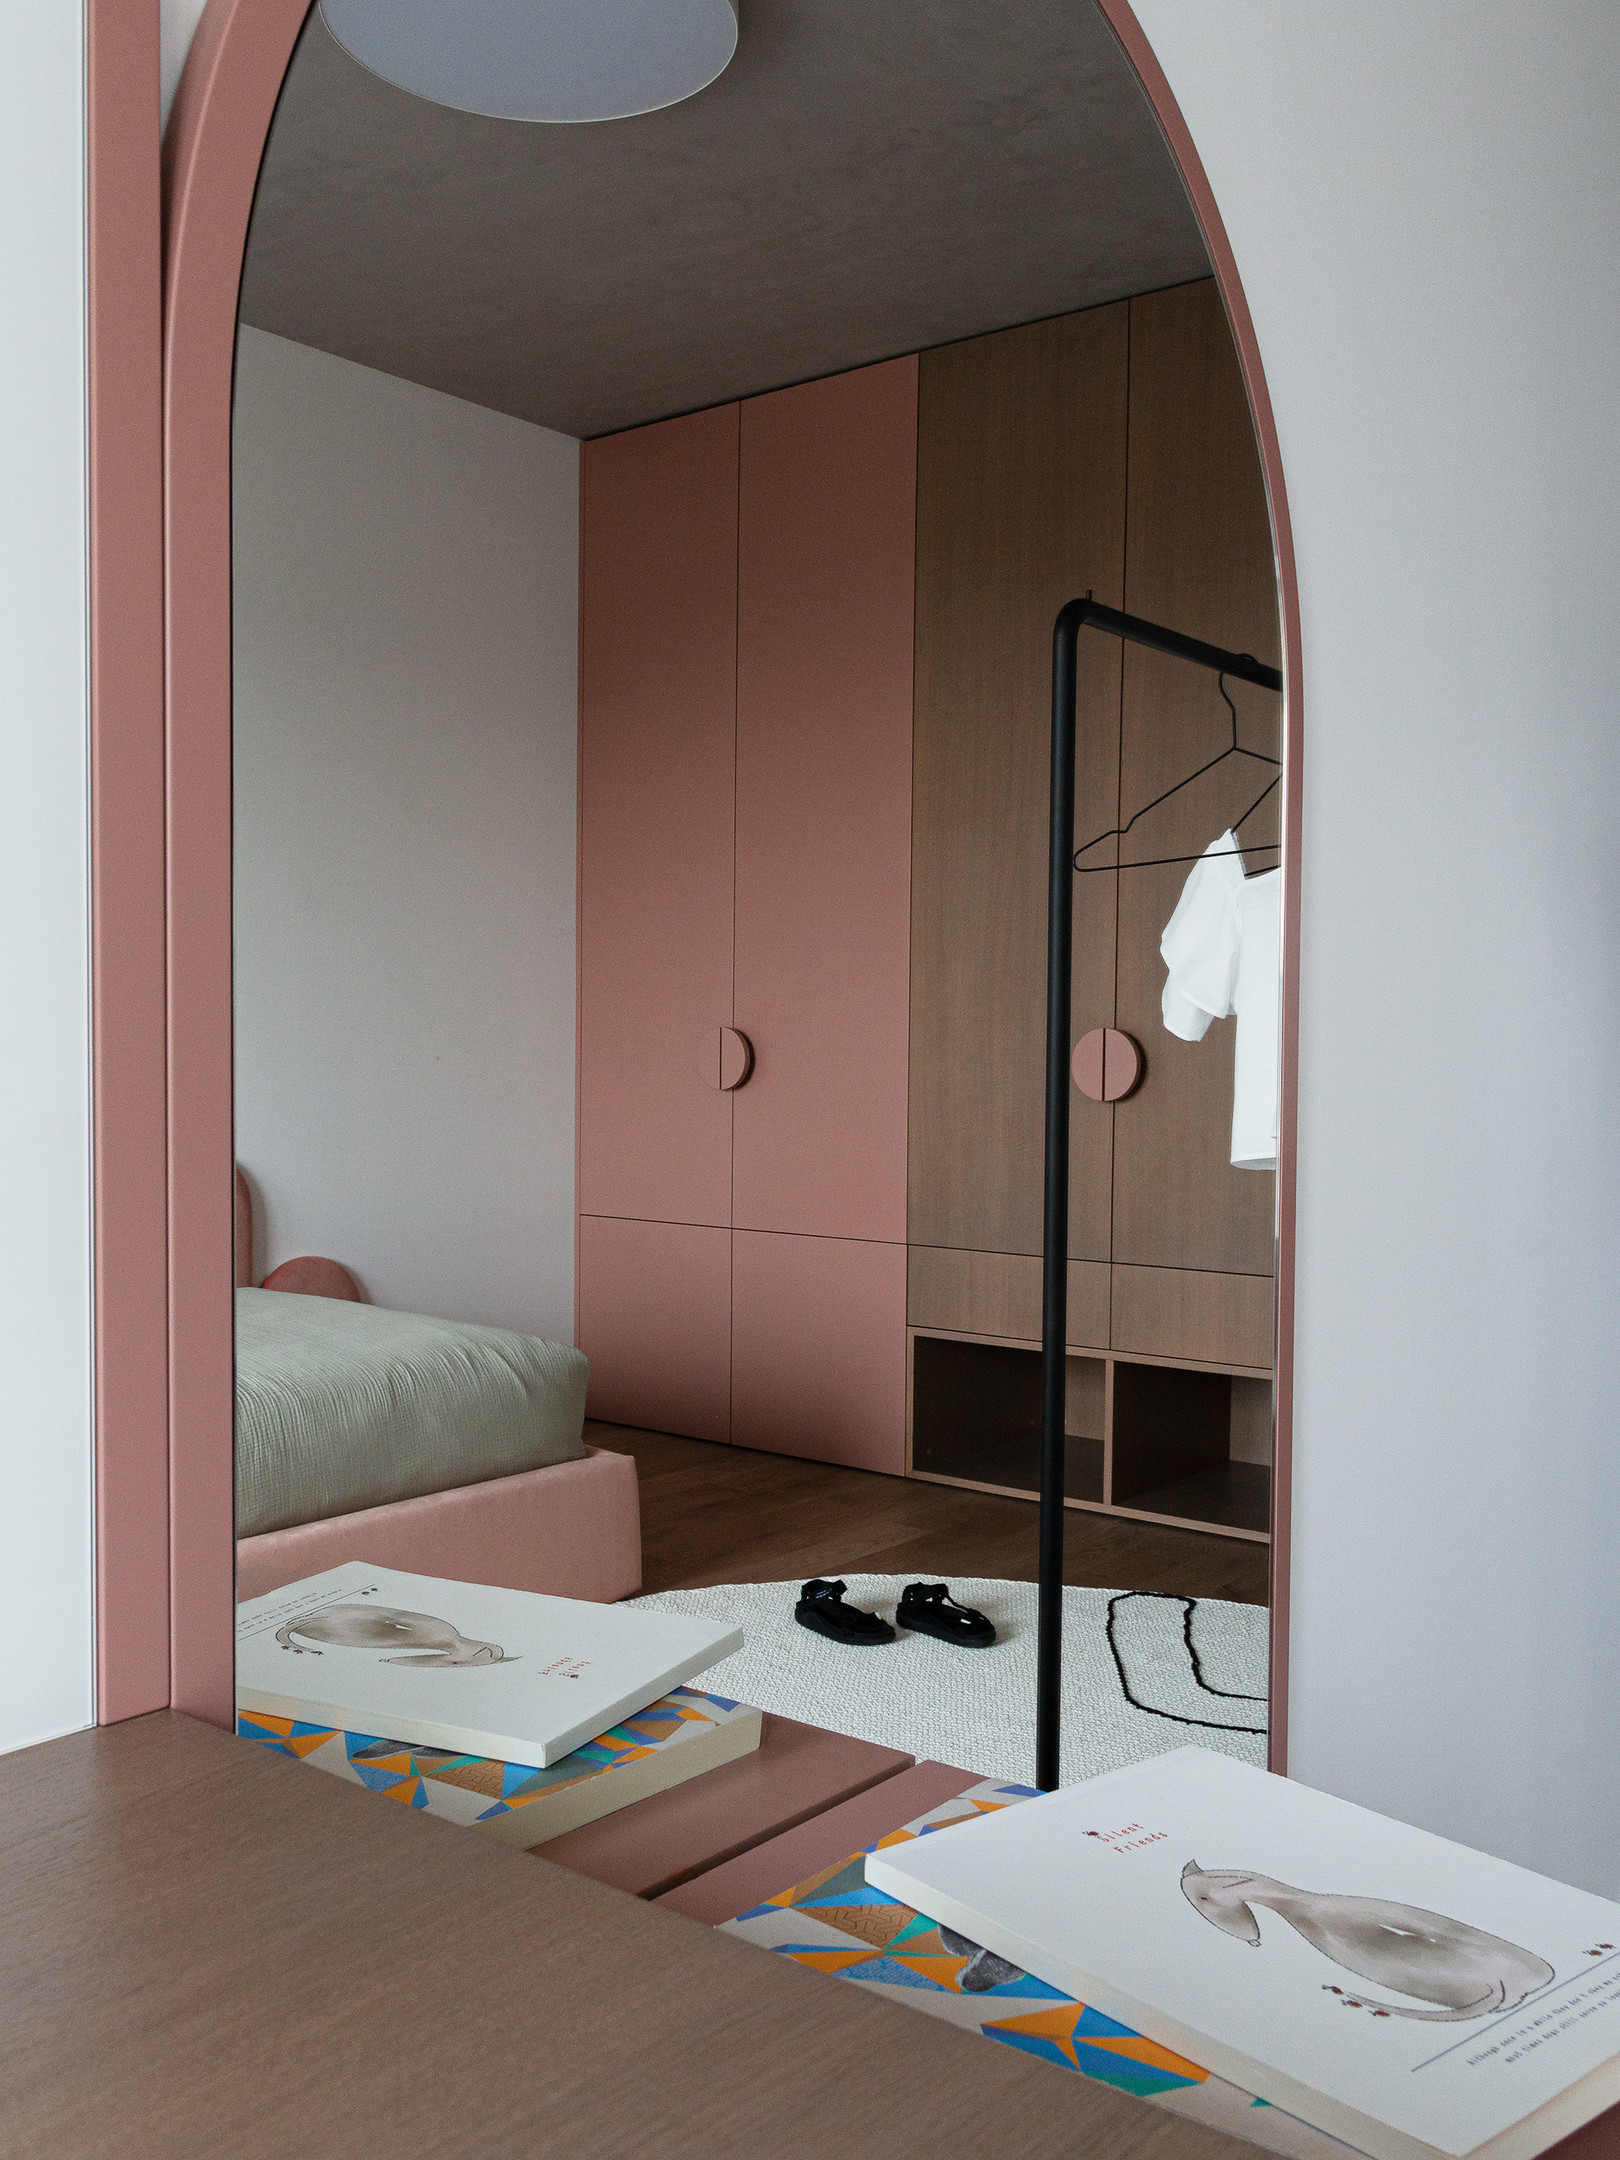 Thay vì chỉ chọn duy nhất một màu hồng, phòng ngủ của cô con gái nhỏ nhỏ được NTK nội thất kết hợp sắc hồng với trắng và nội thất gỗ để tăng vẻ nữ tính và phù hợp với nhiều giai đoạn phát triển của trẻ.